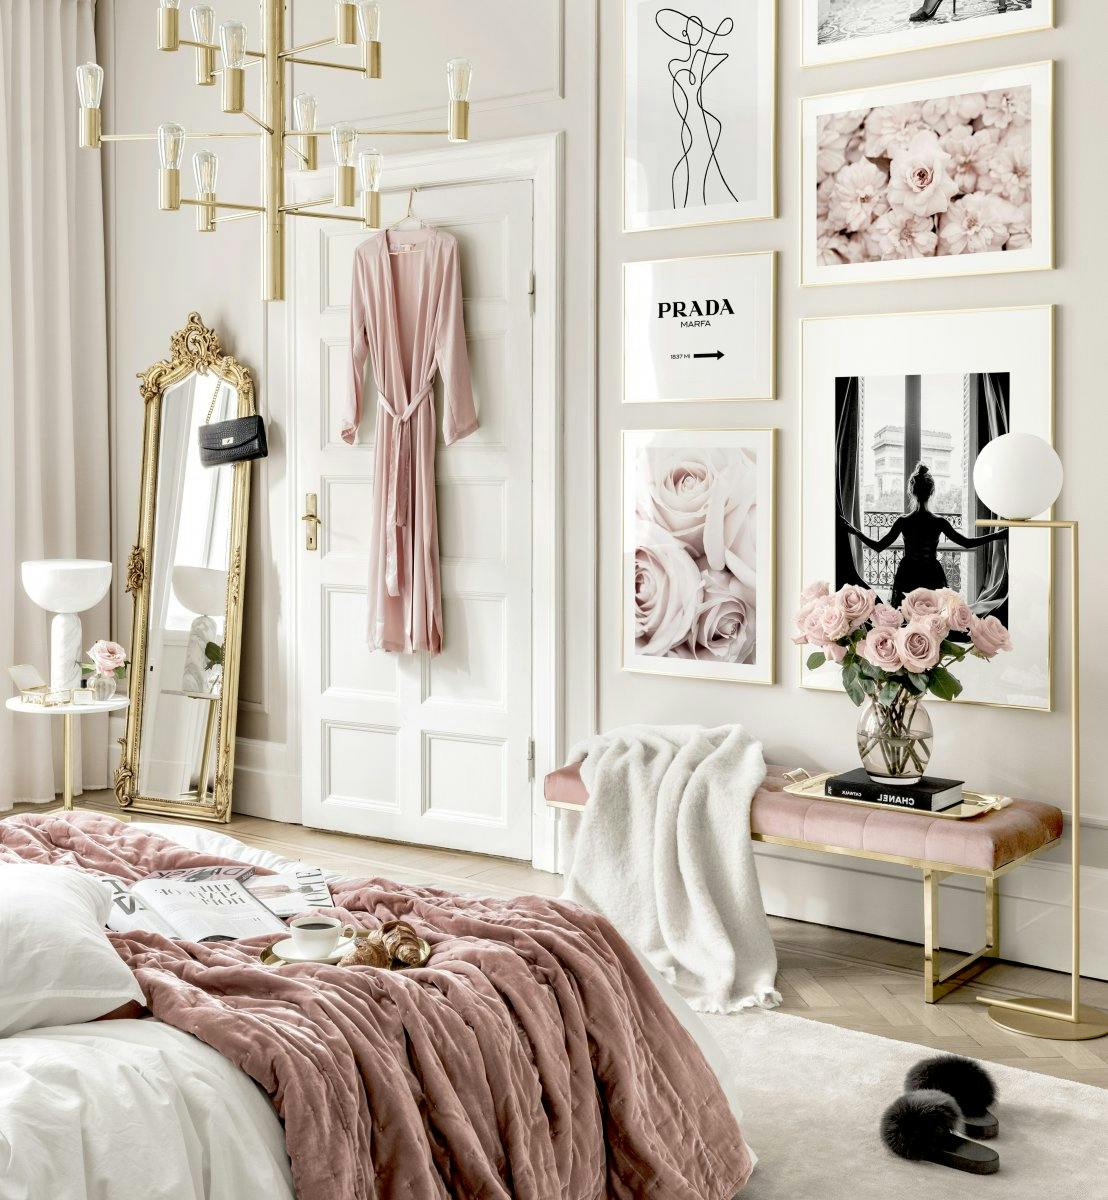 تصميم غرفة نوم بلوحات أزياء ولوحات صورة زهرة مع إطارات ذهبية اللون